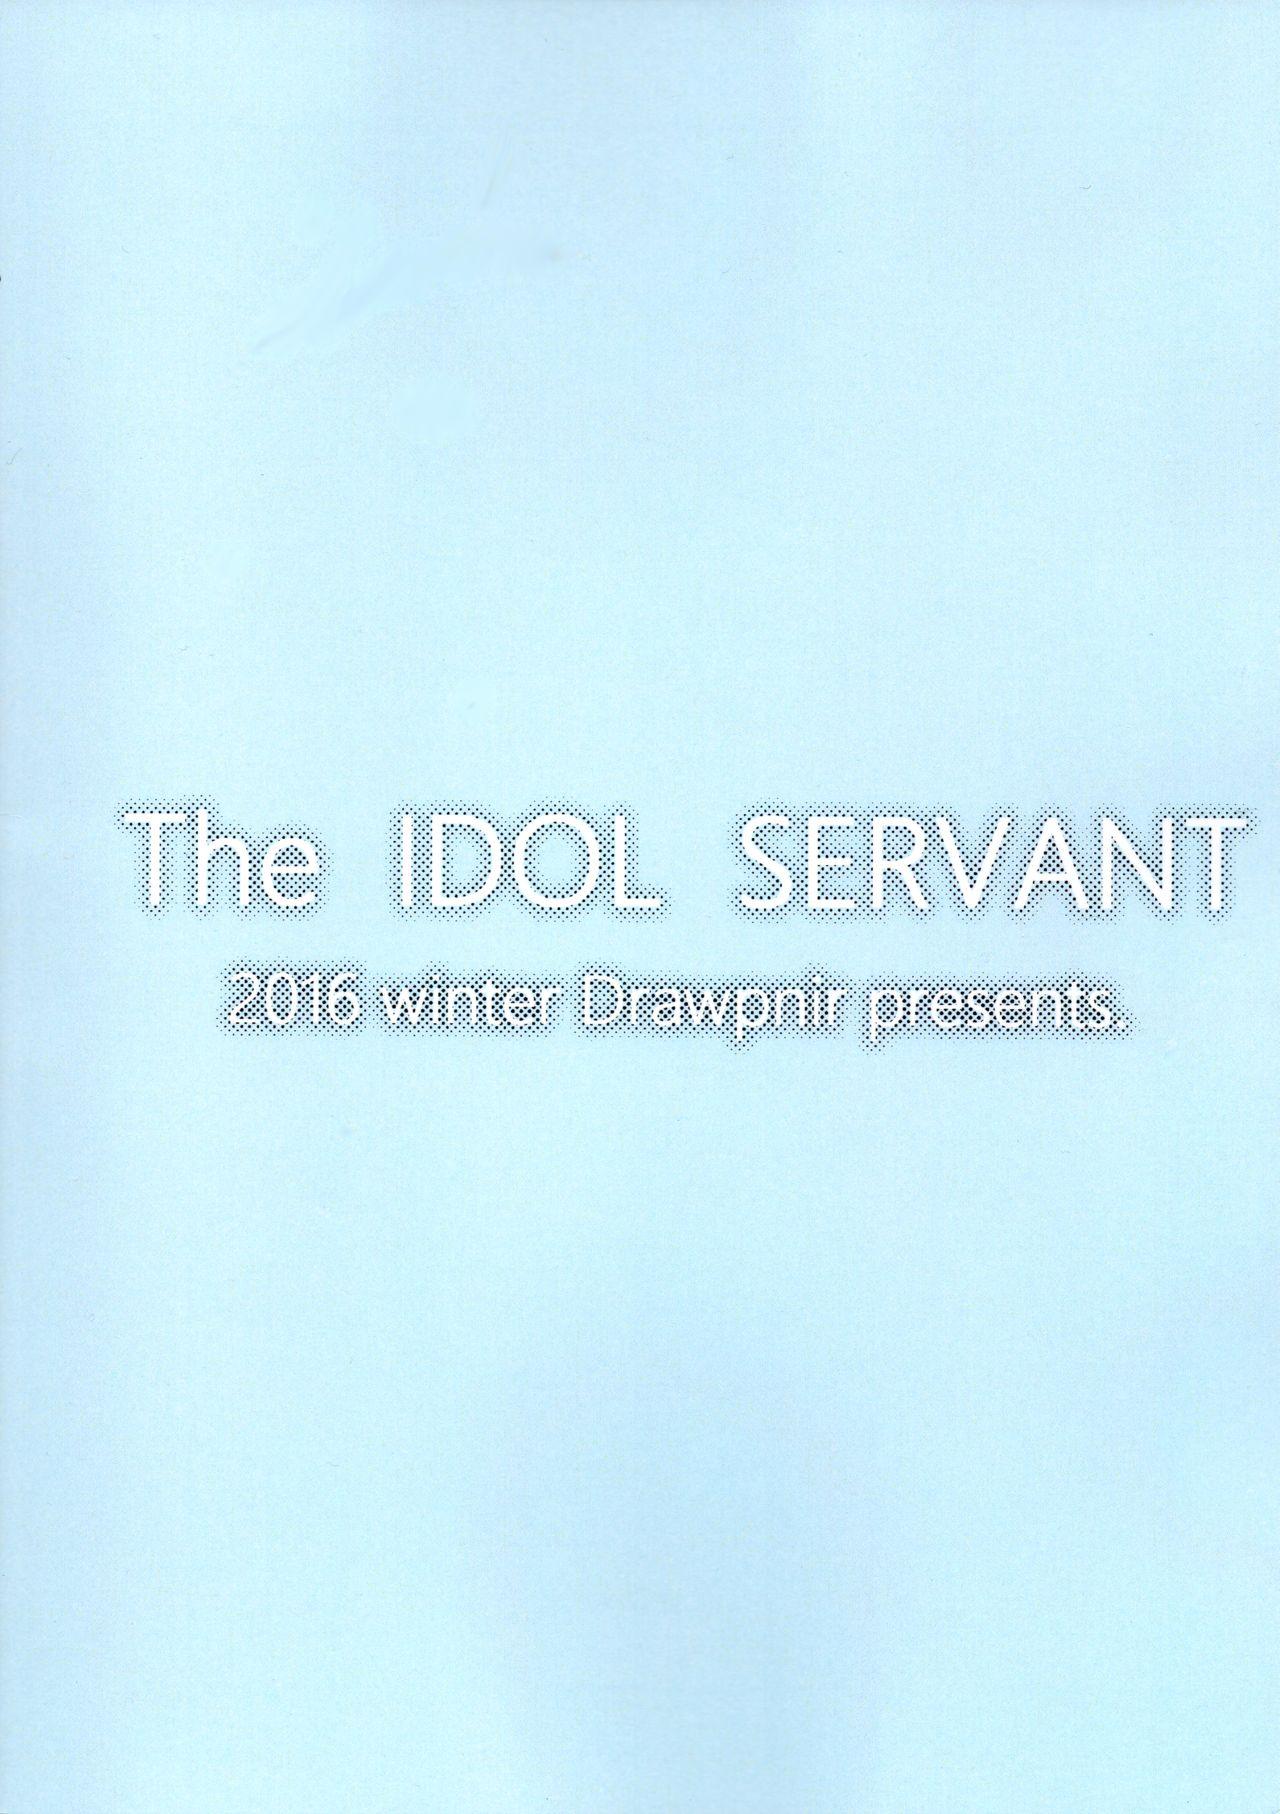 The IDOL SERVANT 25